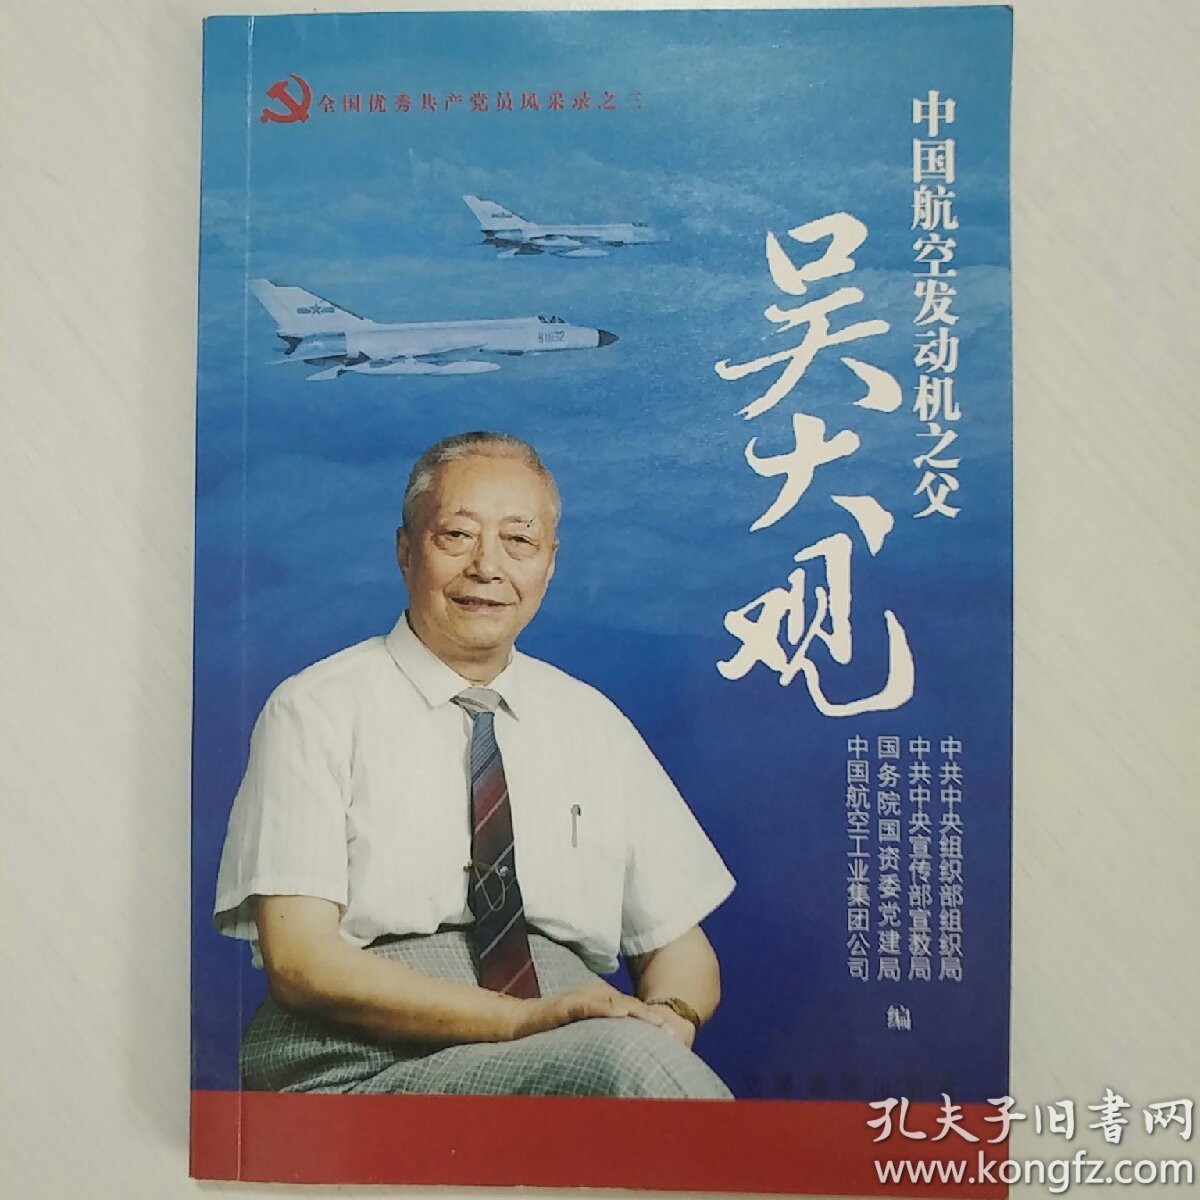 中国航空发动机之父:吴大观